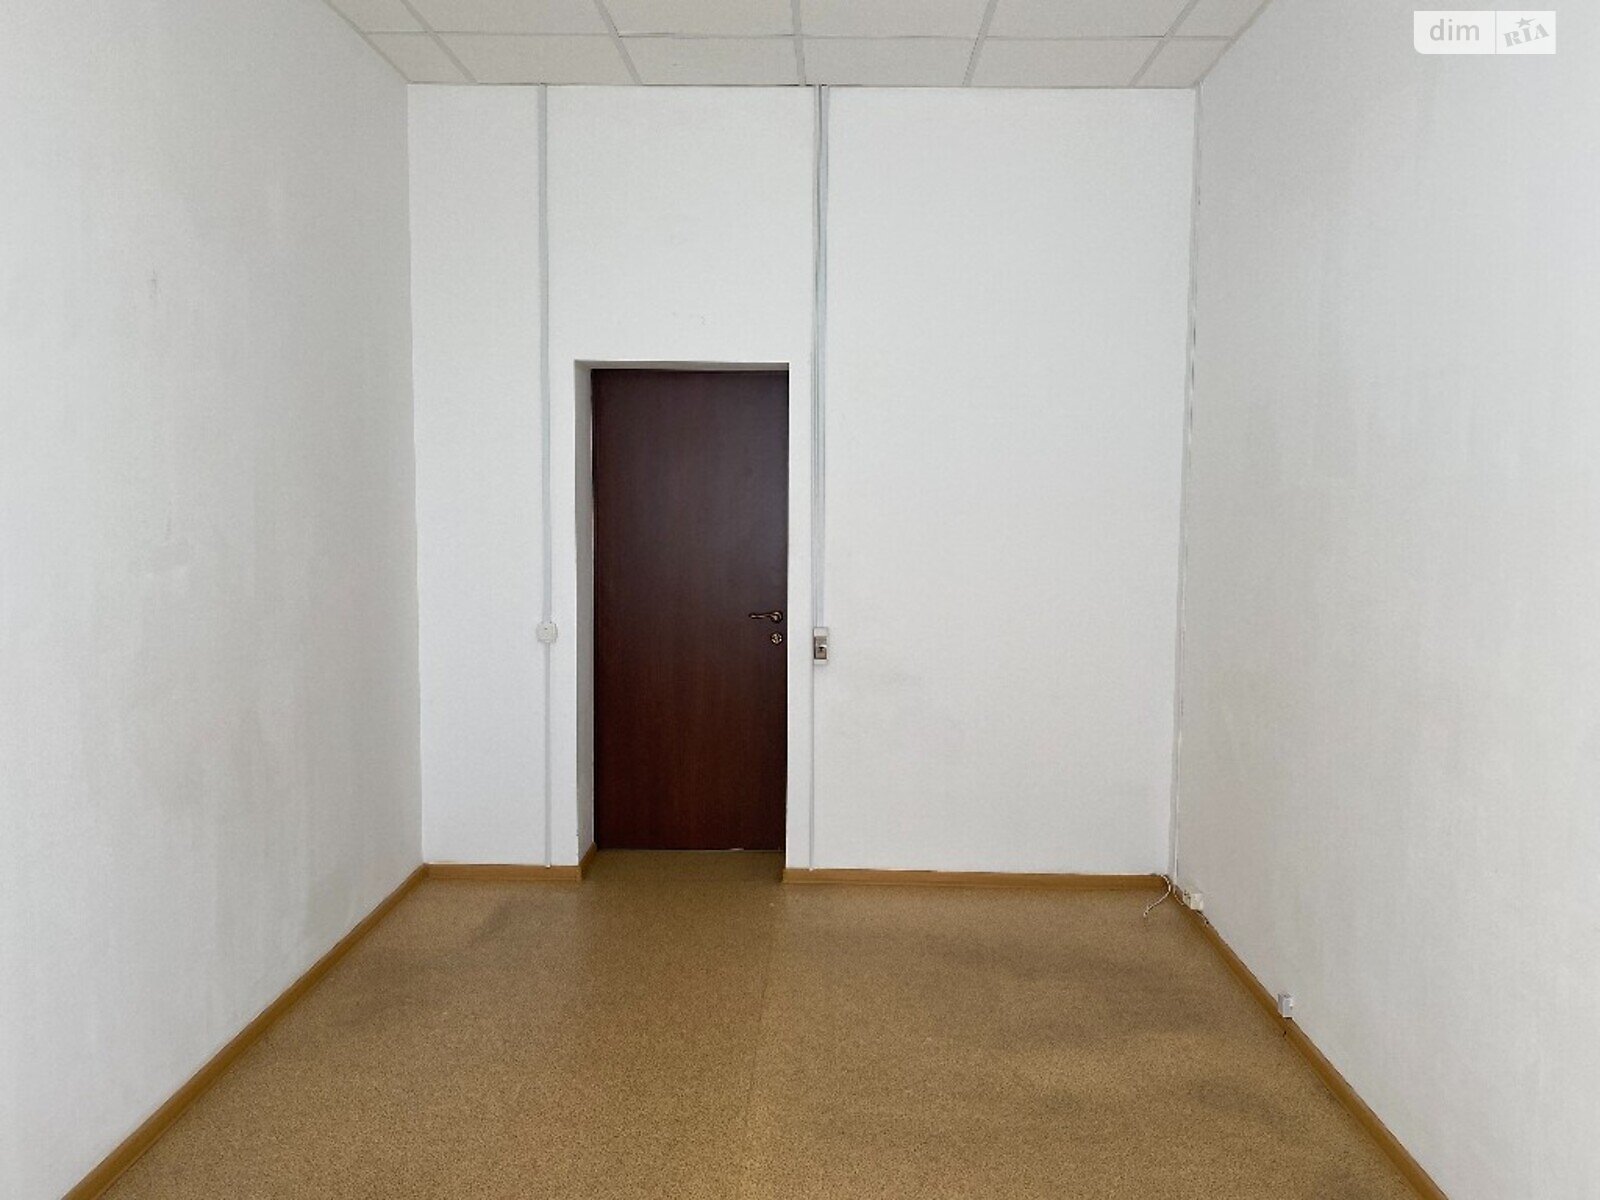 Аренда офисного помещения в Днепре, Ольги княгини улица 22, помещений - 1, этаж - 7 фото 1